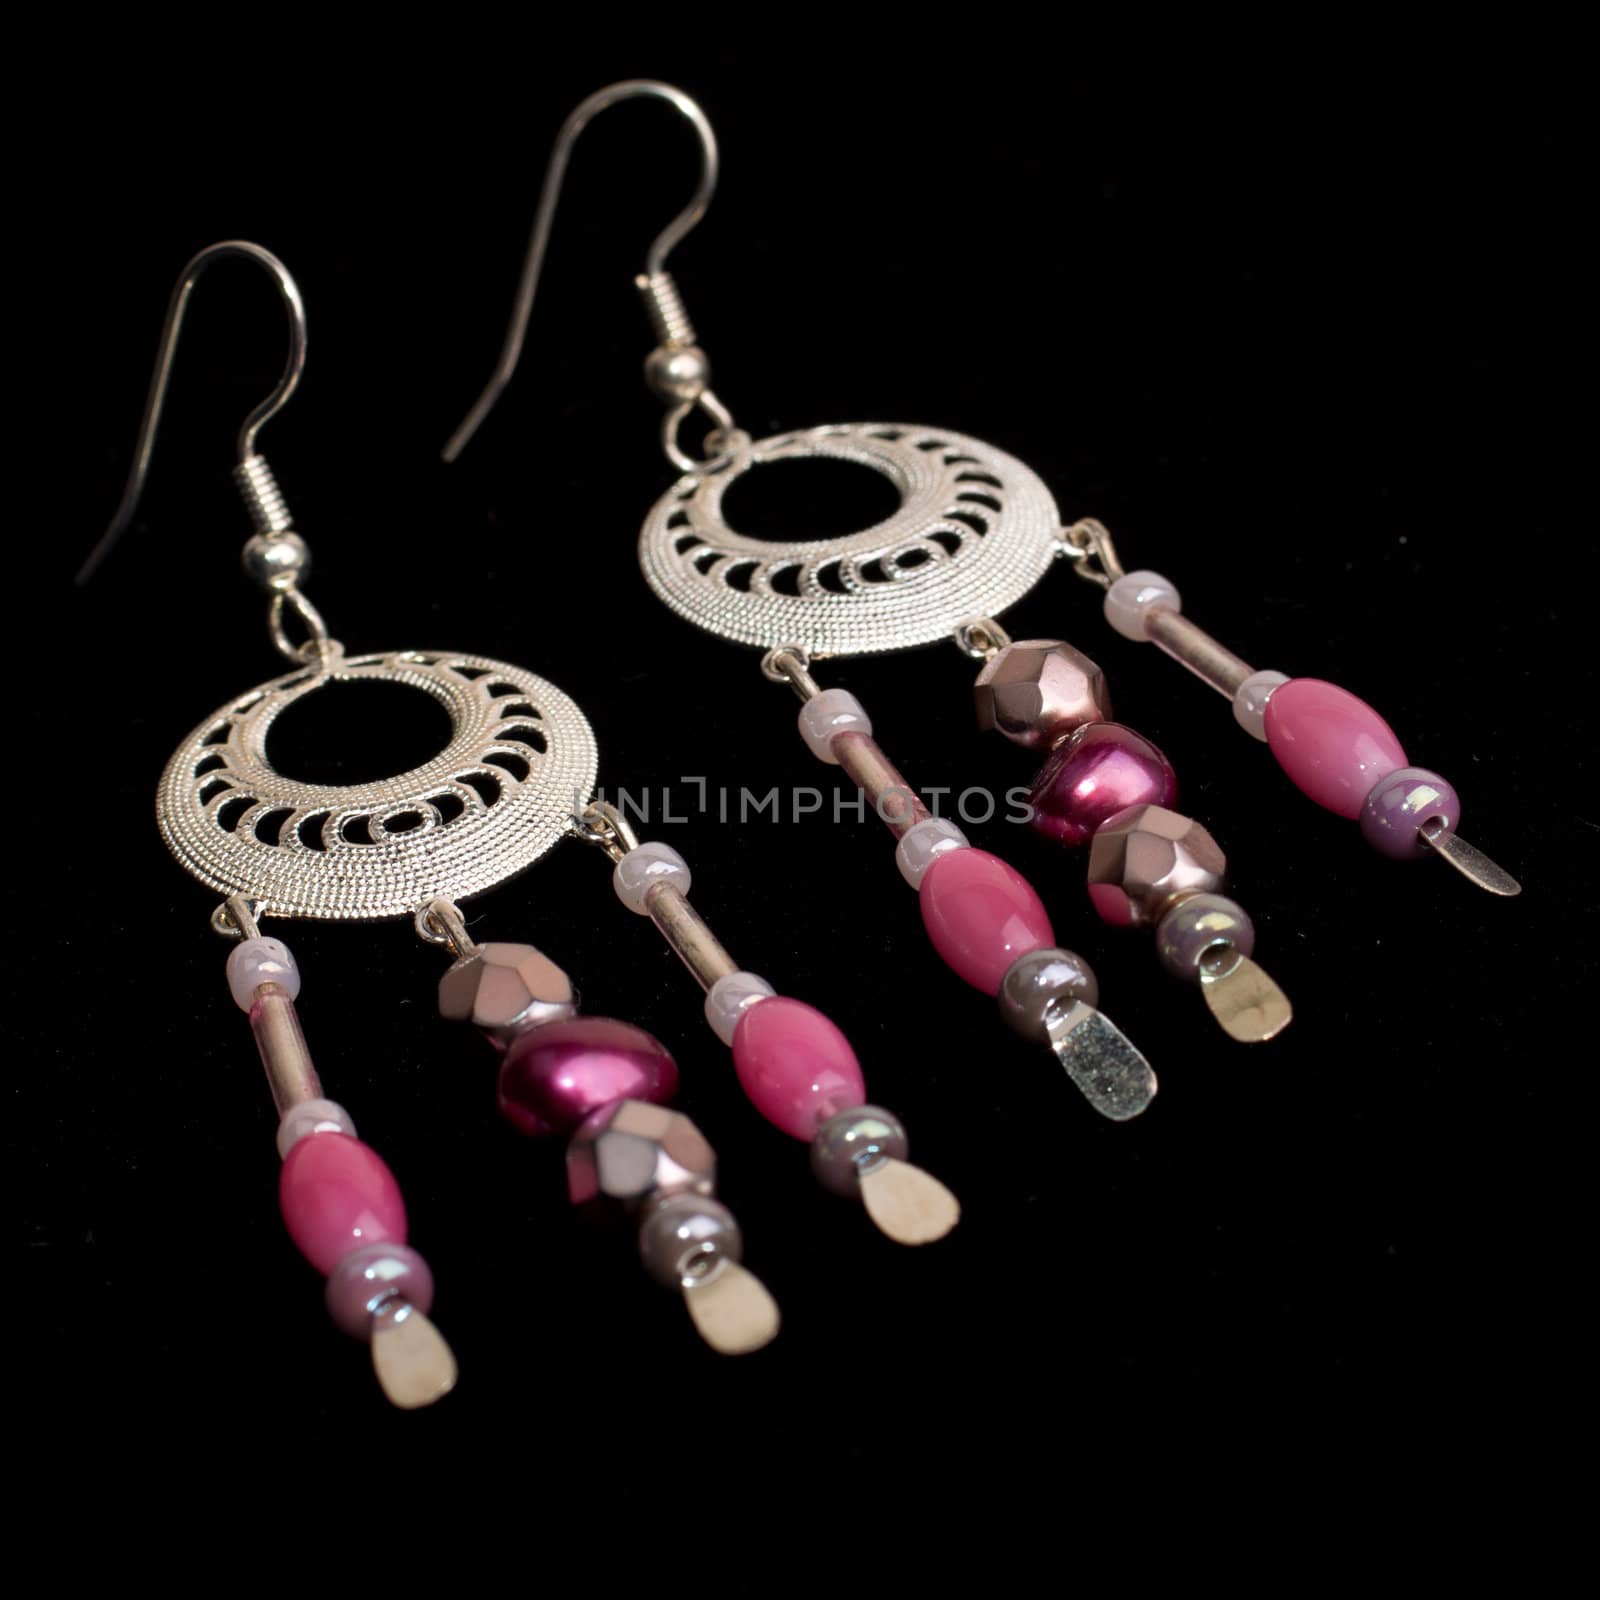 Handmade beaded earrings isolated on black background